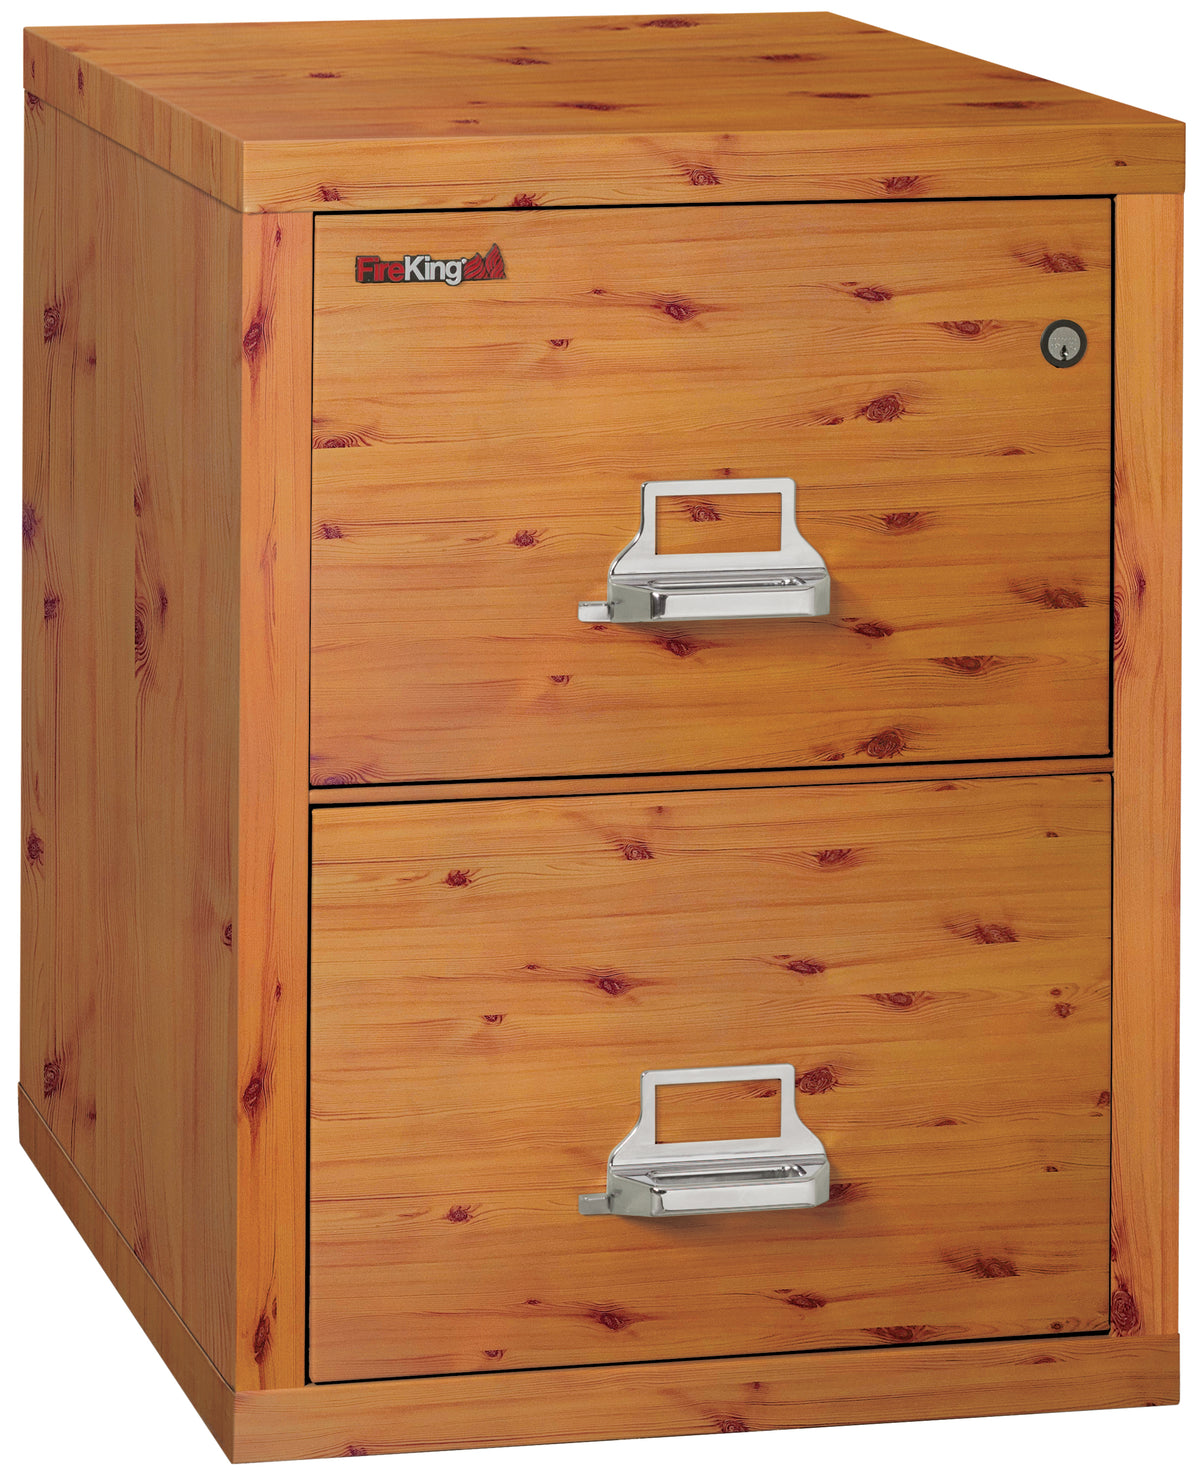 FireKing 2-1825 Pine 2 Drawer File Cabinet 